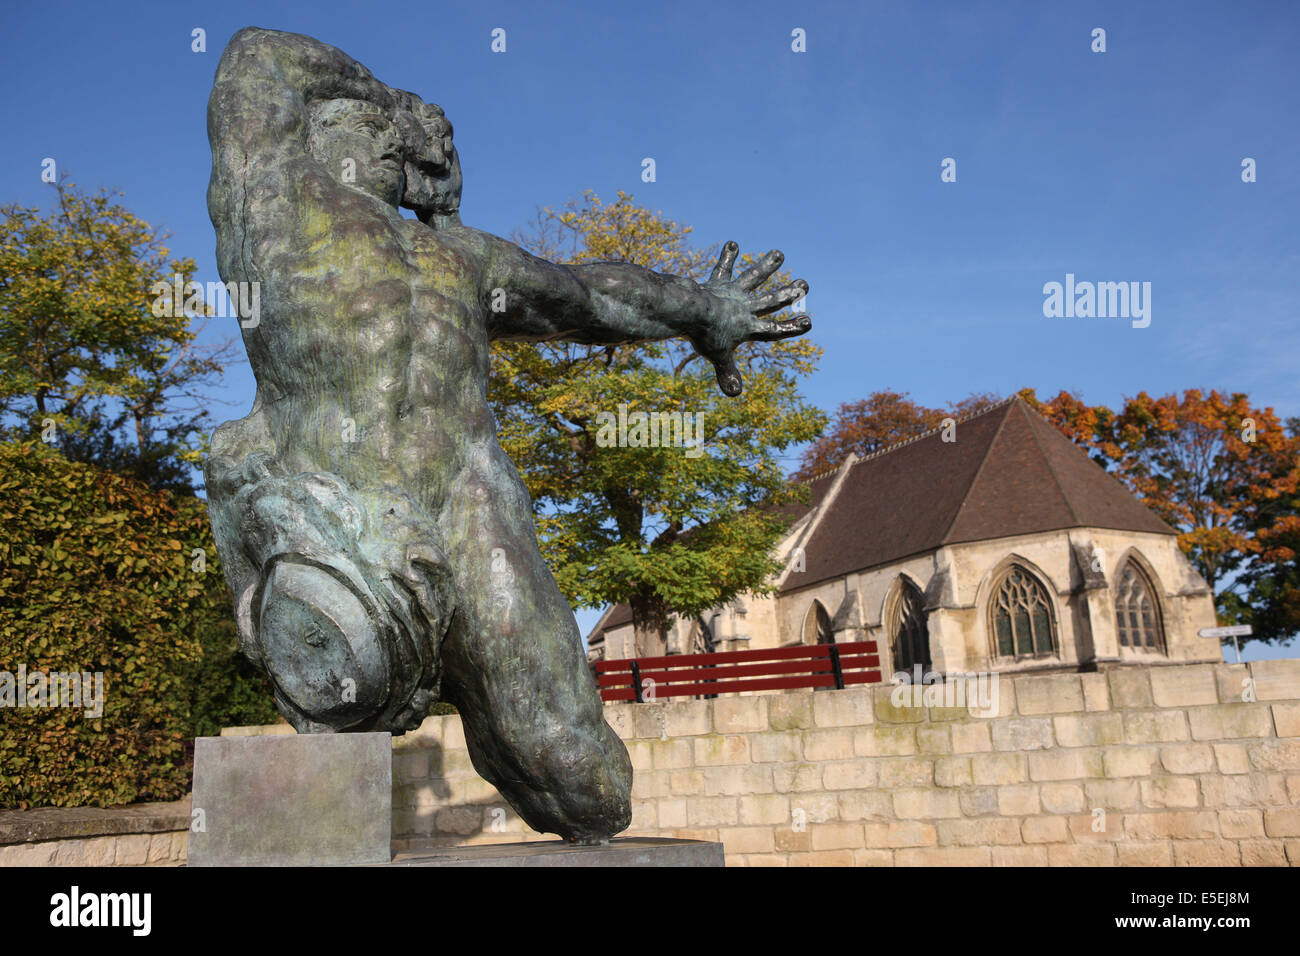 Francia, Normandia, calvados, caen, parc du Chateau, scultura d'antoine bourdelle, le guerrier sans jambe, Foto Stock